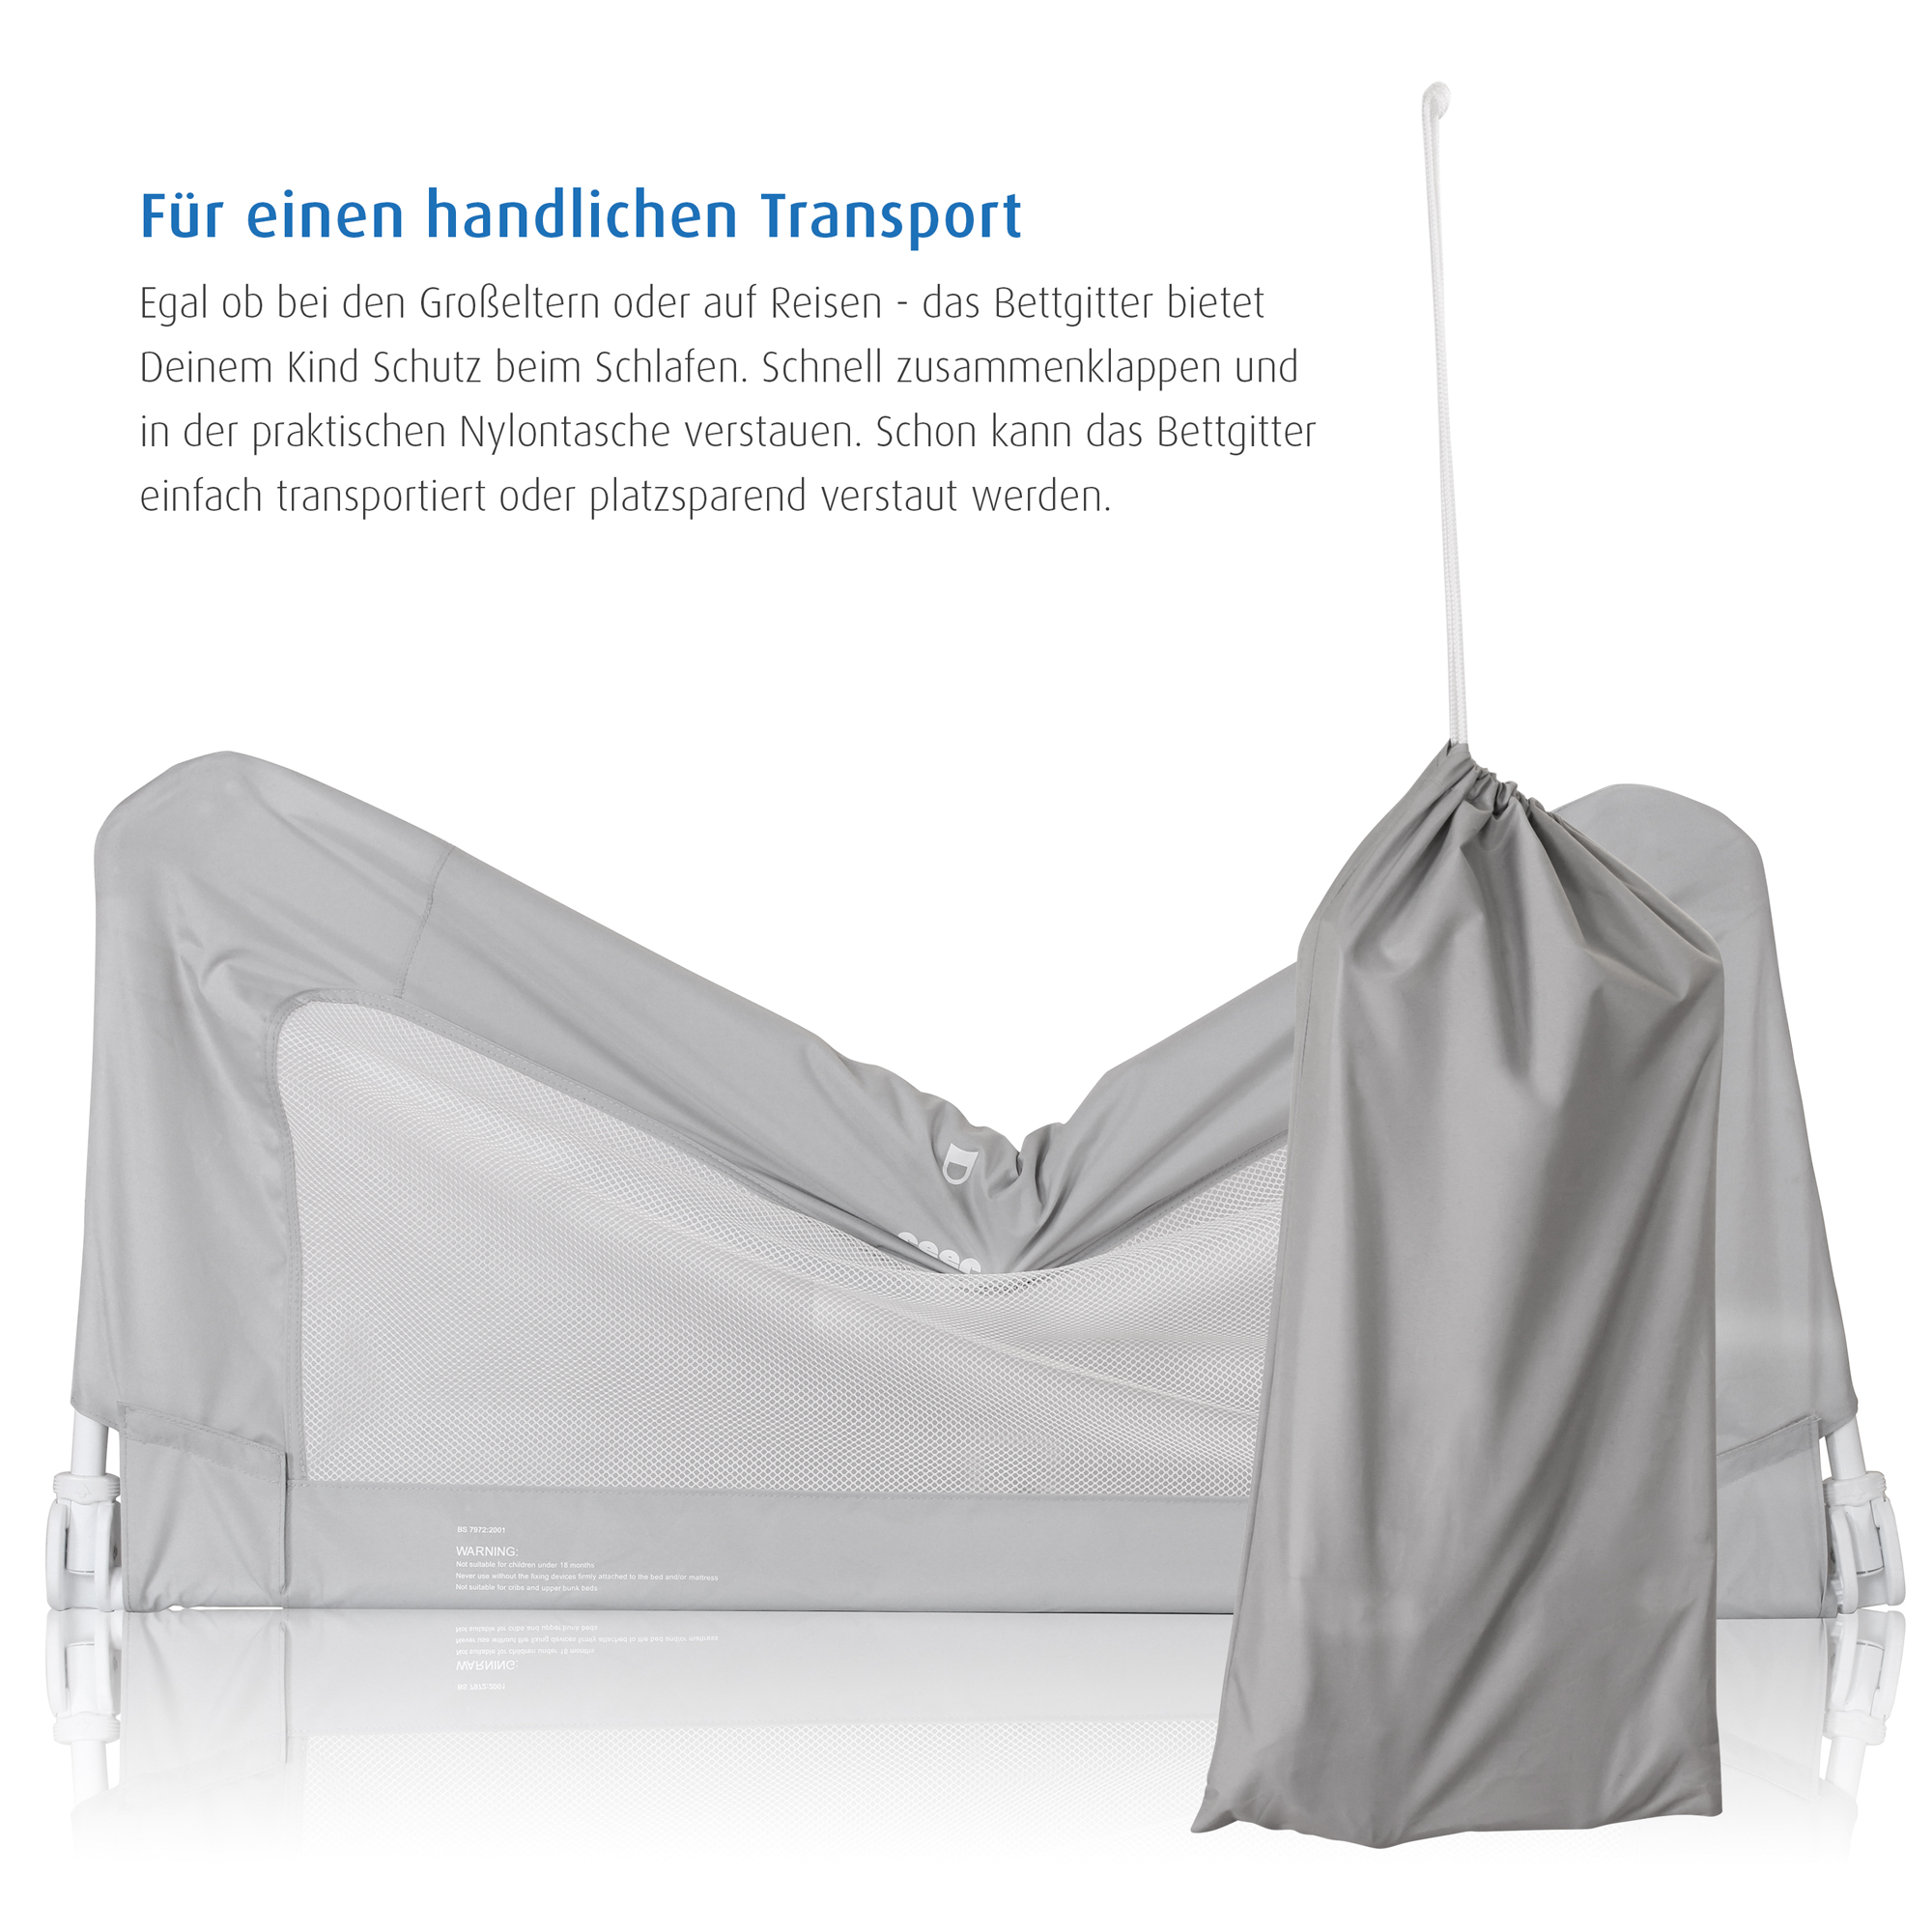 ByMySide Bettgitter für Betten 150 cm - 210 cm mit Abklappfunktion - geprüfte B-Ware